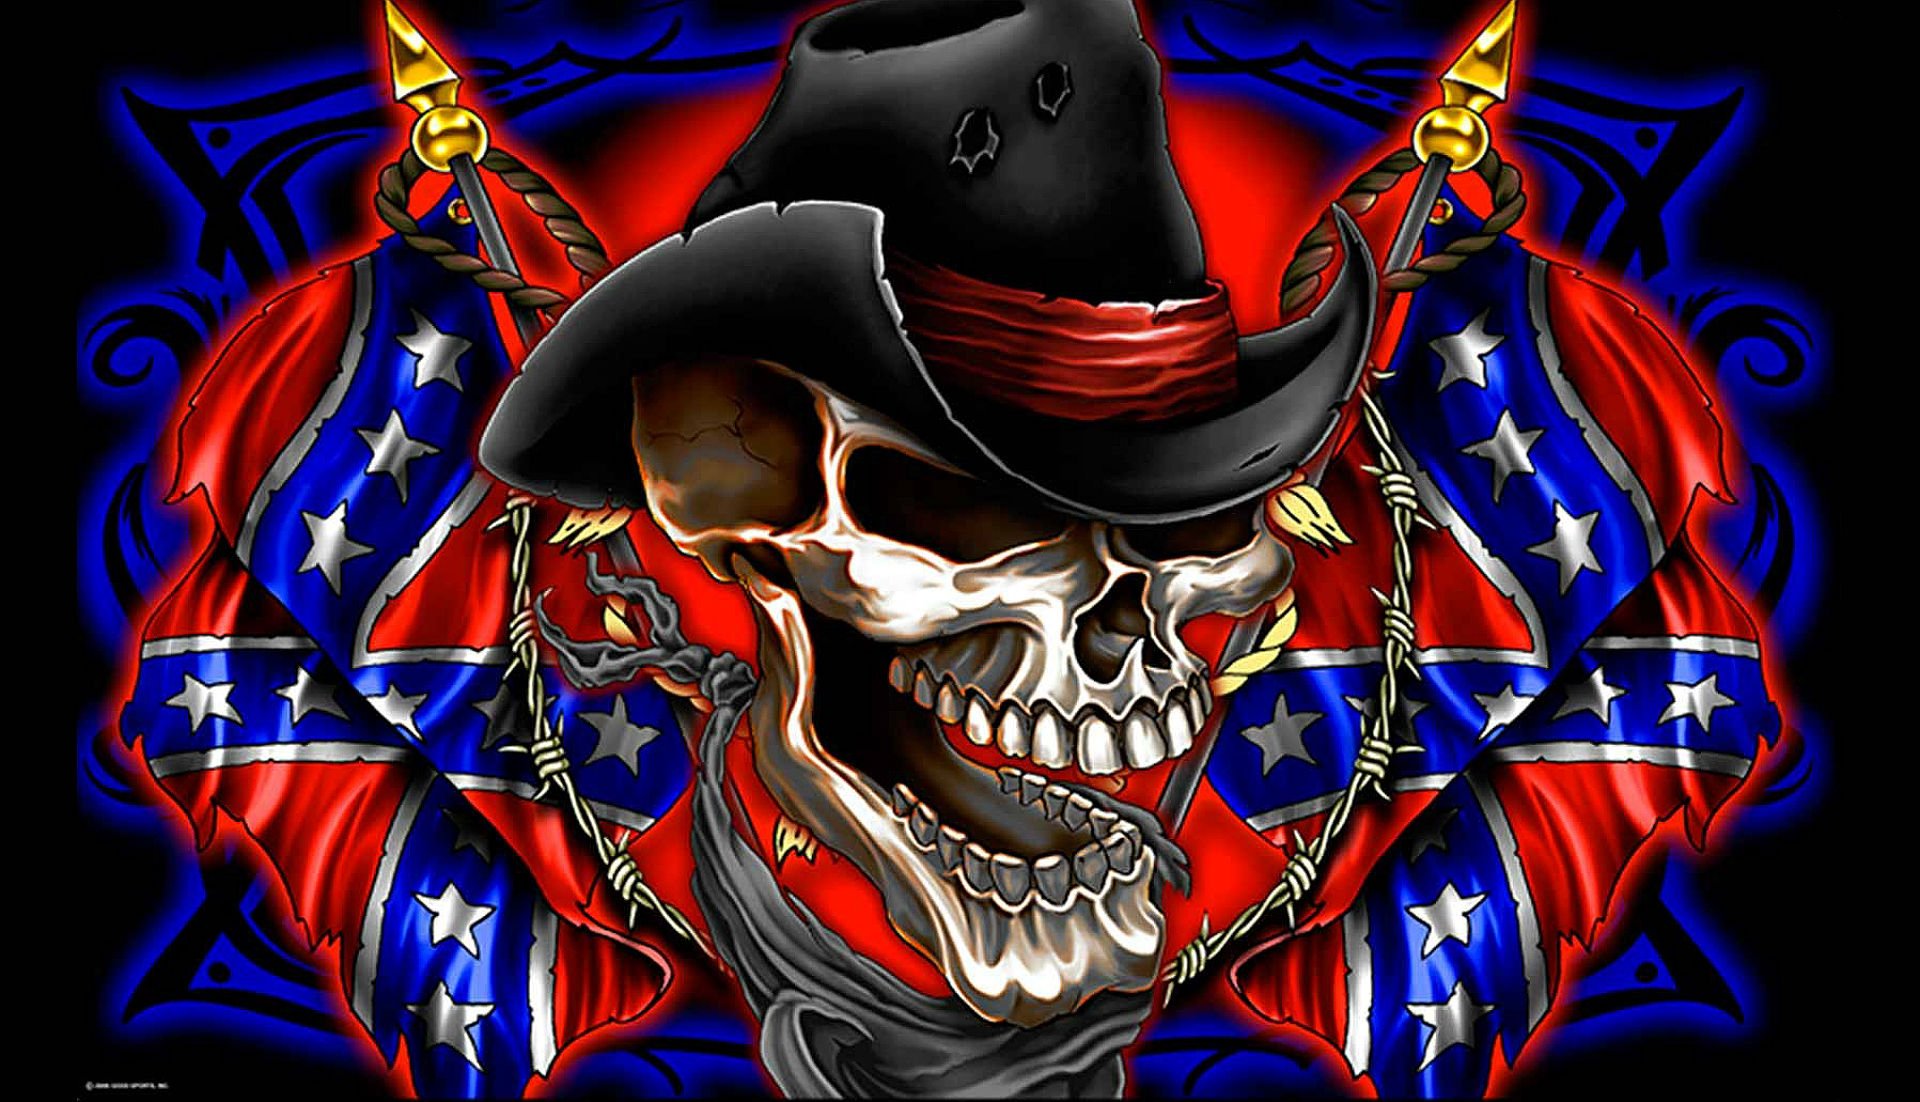 rebel_dixie_military_poster_skull_1920x1102.jpg